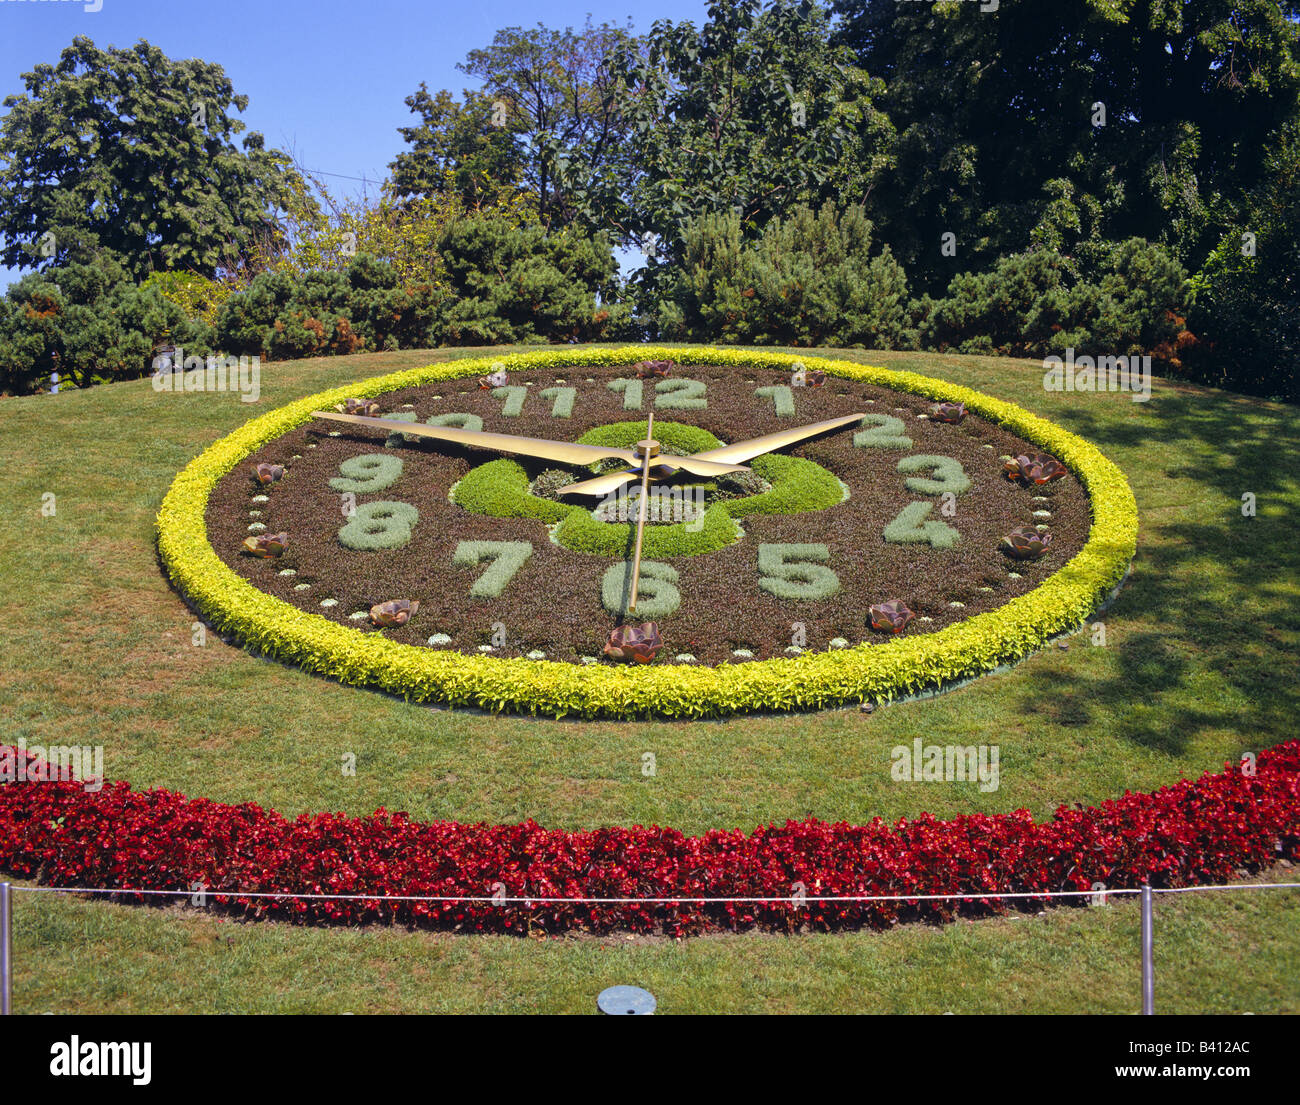 Die Blumenuhr in den englischen Garten-Genf-Schweiz Stockfotografie - Alamy